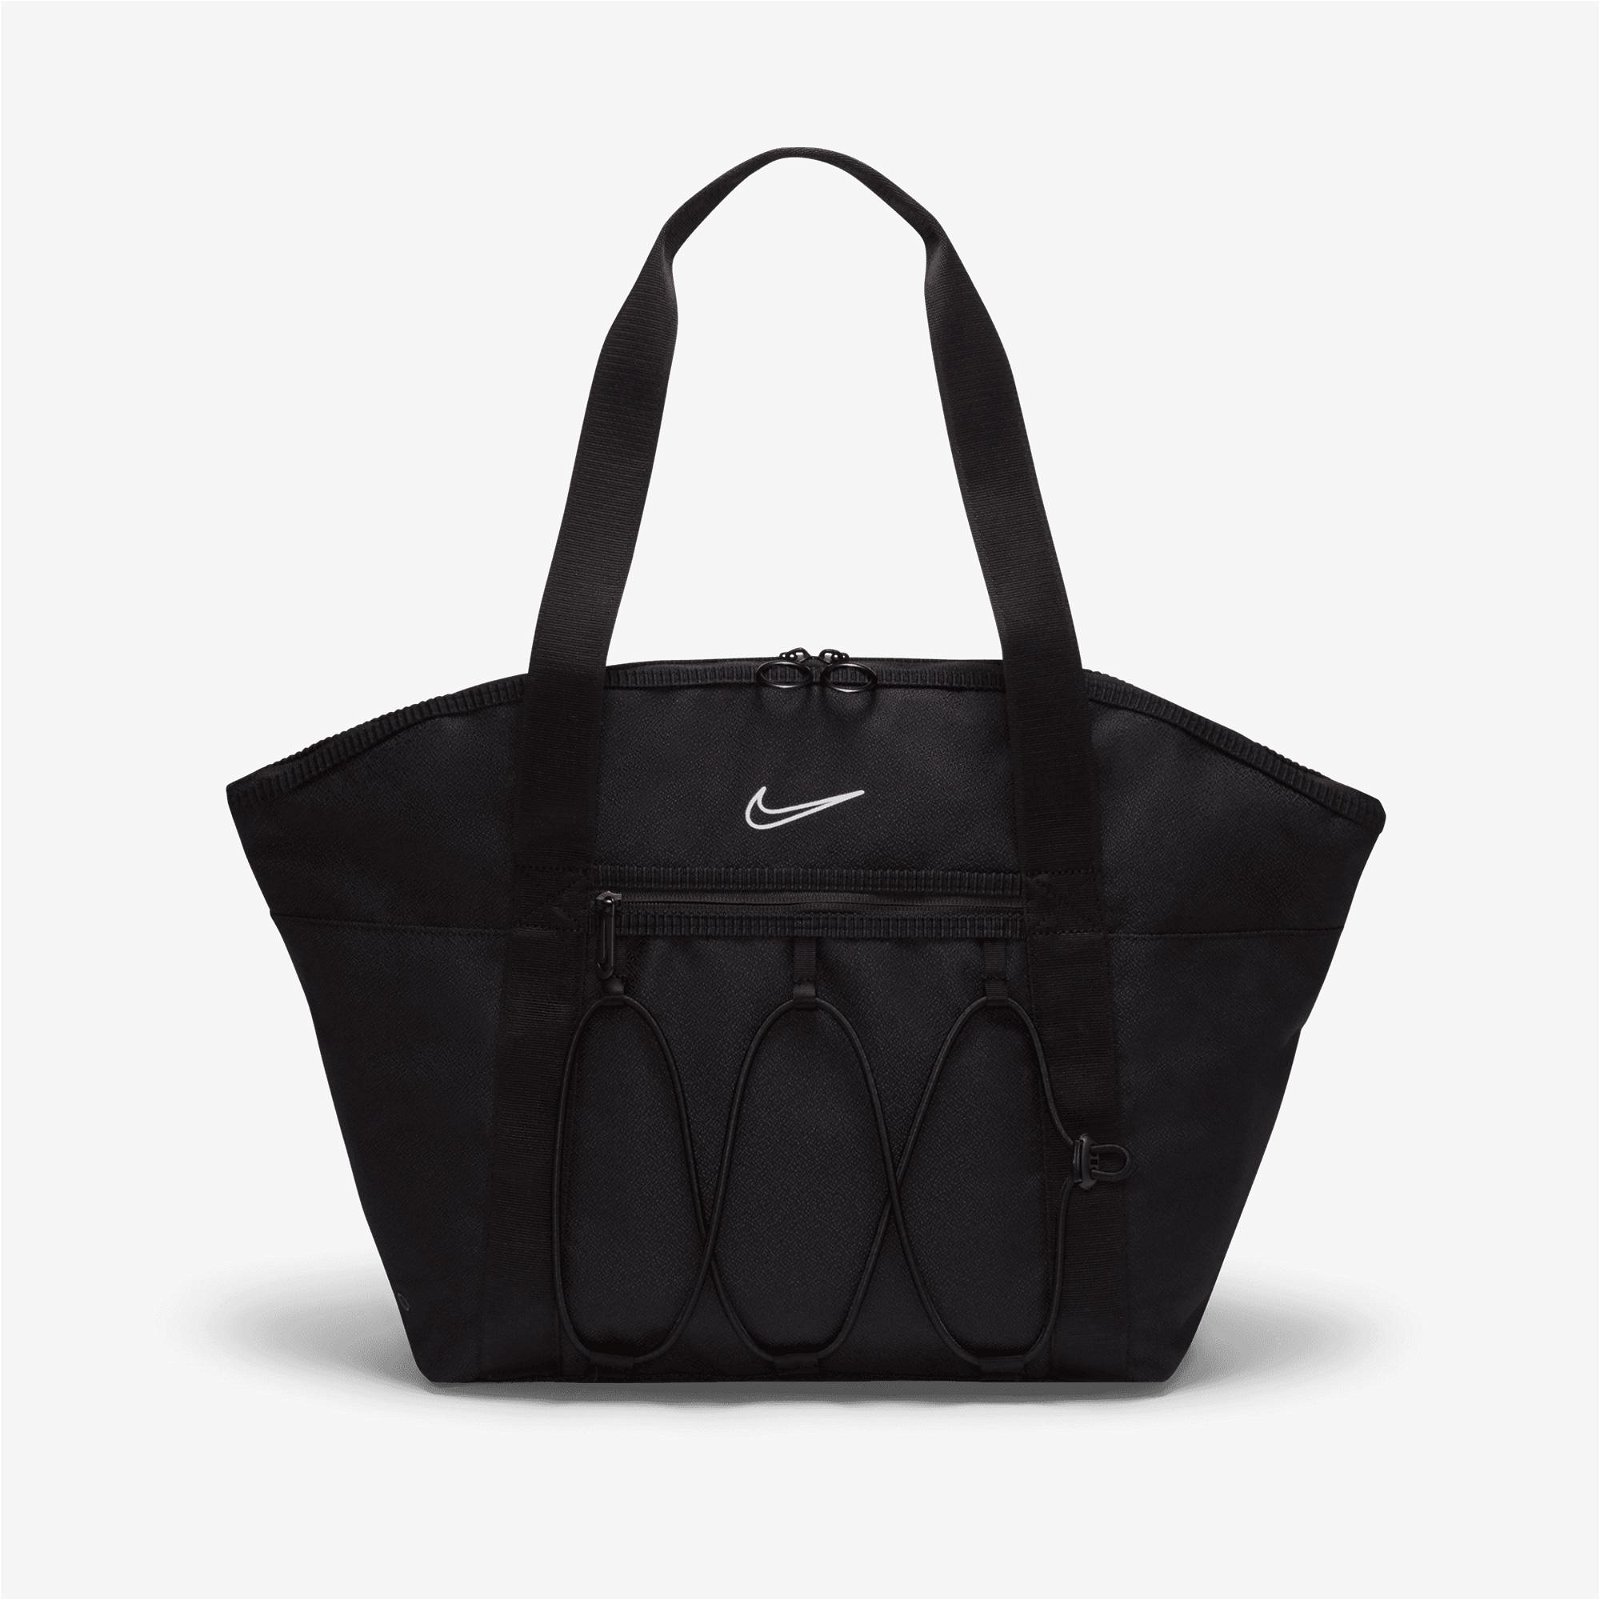 Nike One Tote Kadın Siyah Omuz Çantası